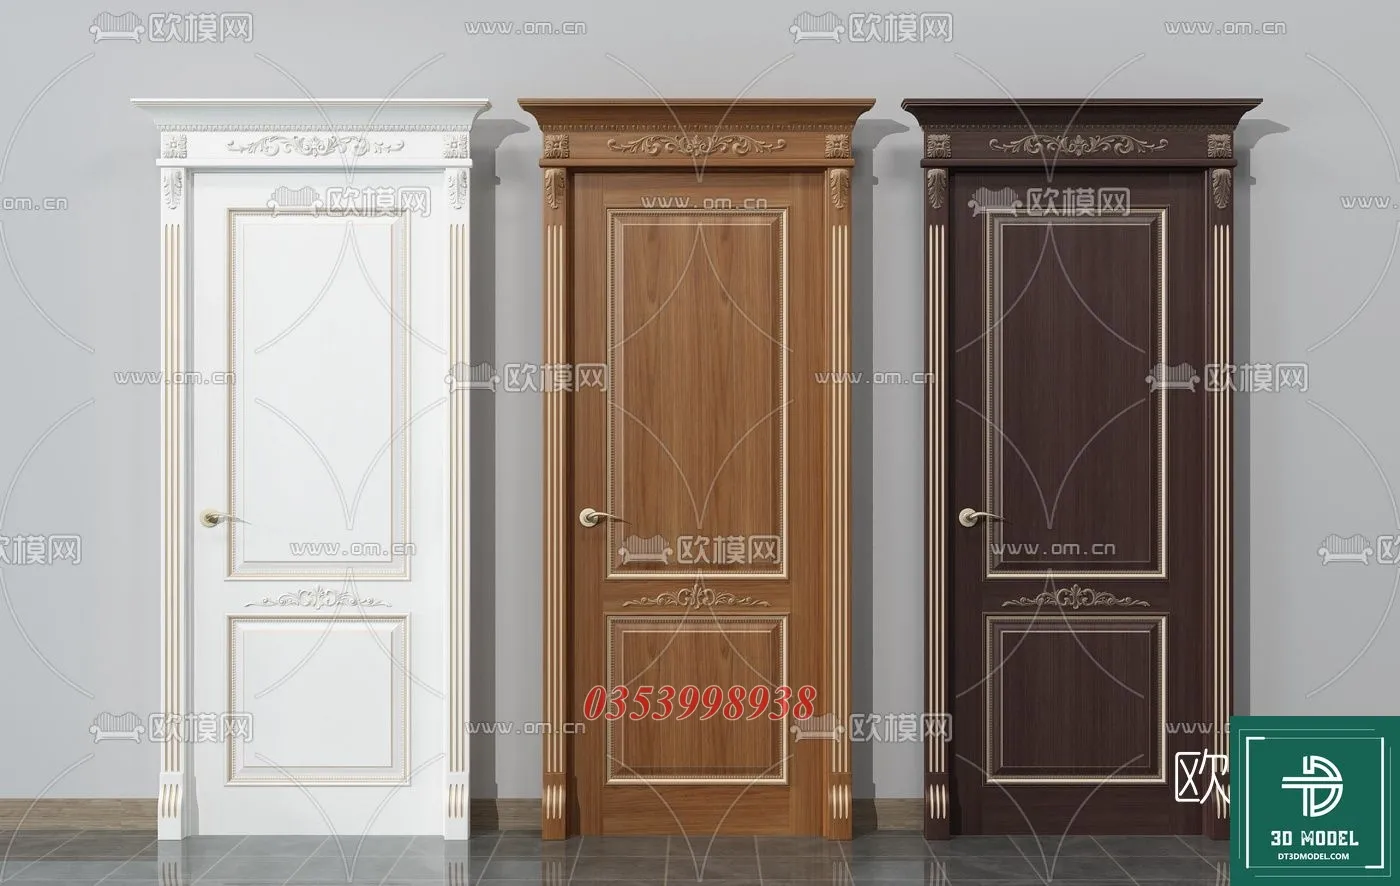 CLASSIC DOOR – 3dsmax MODELS – 031